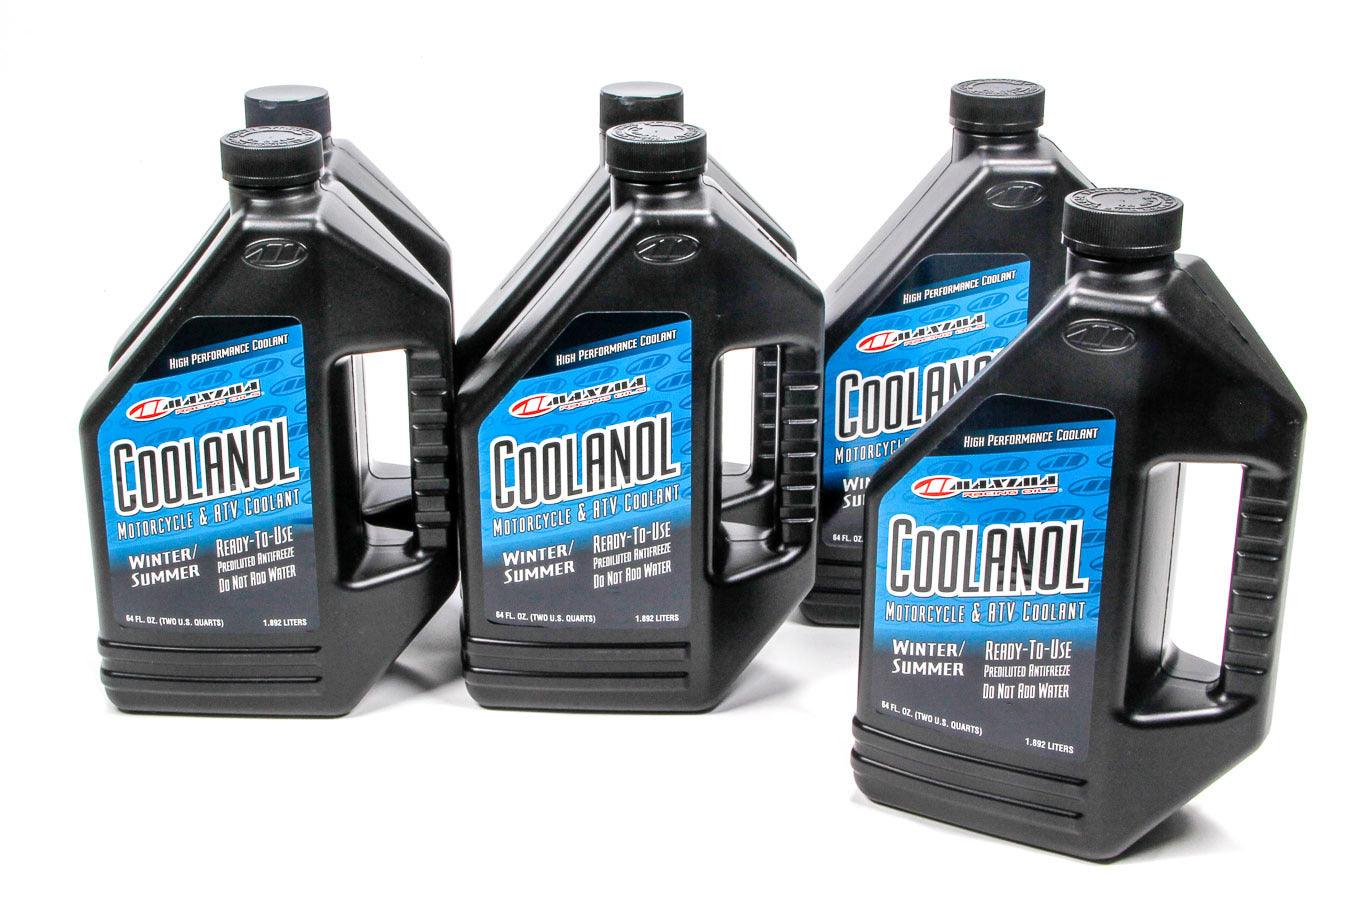 Coolanol Coolant Case 6x1/2 Gallon - Burlile Performance Products